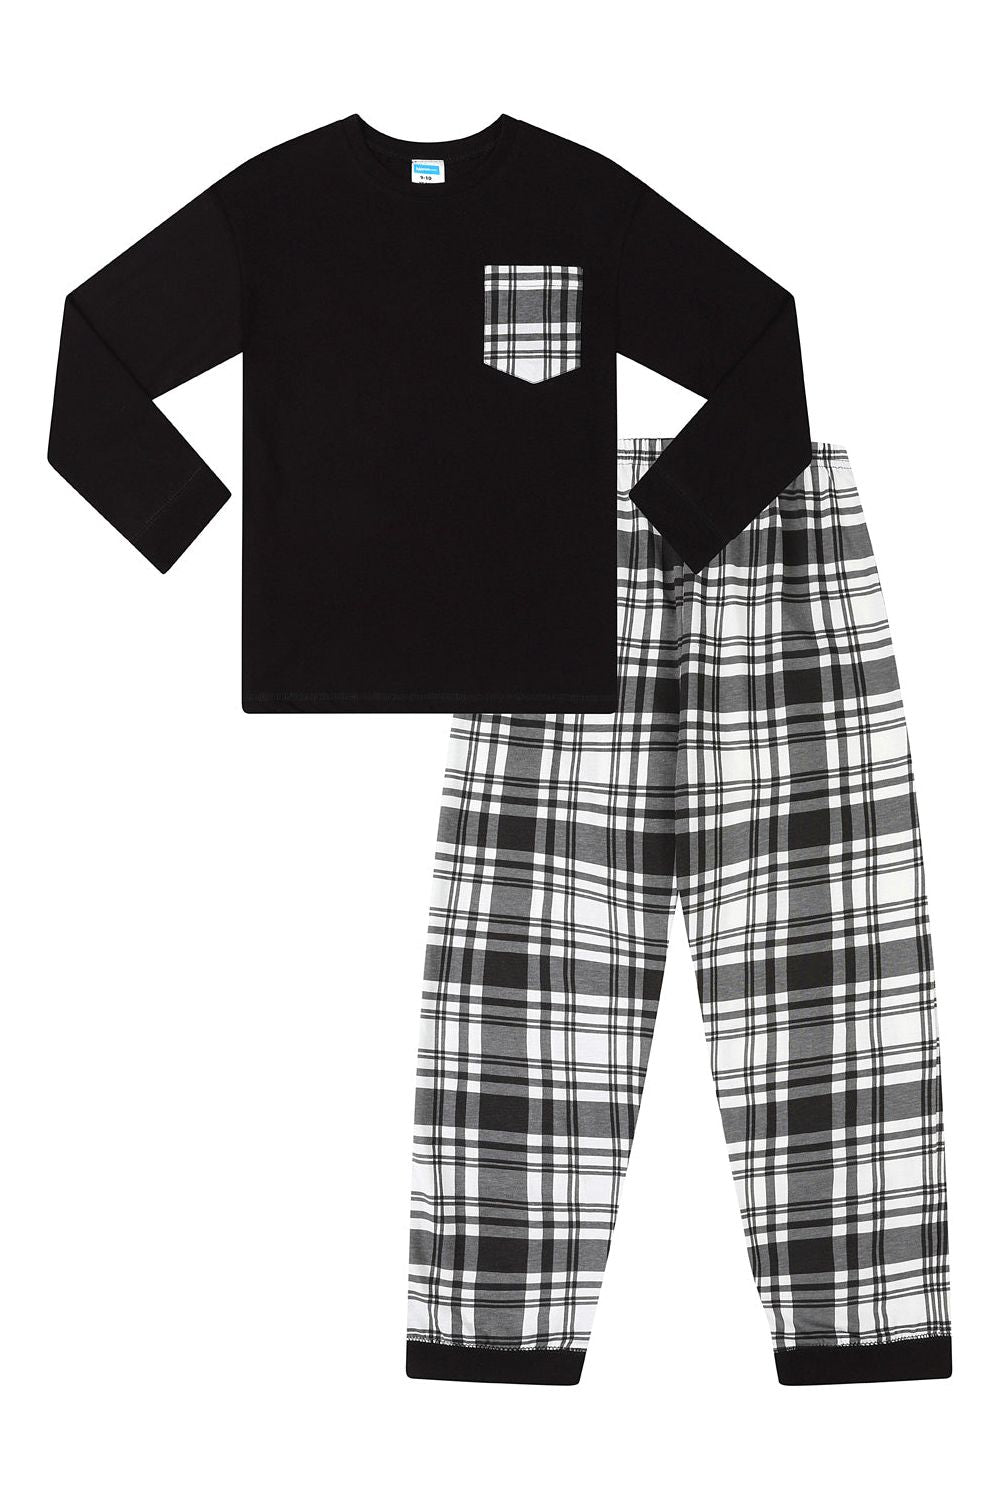 Boys Black and White Check Cotton Long Pyjamas - Pyjamas.com